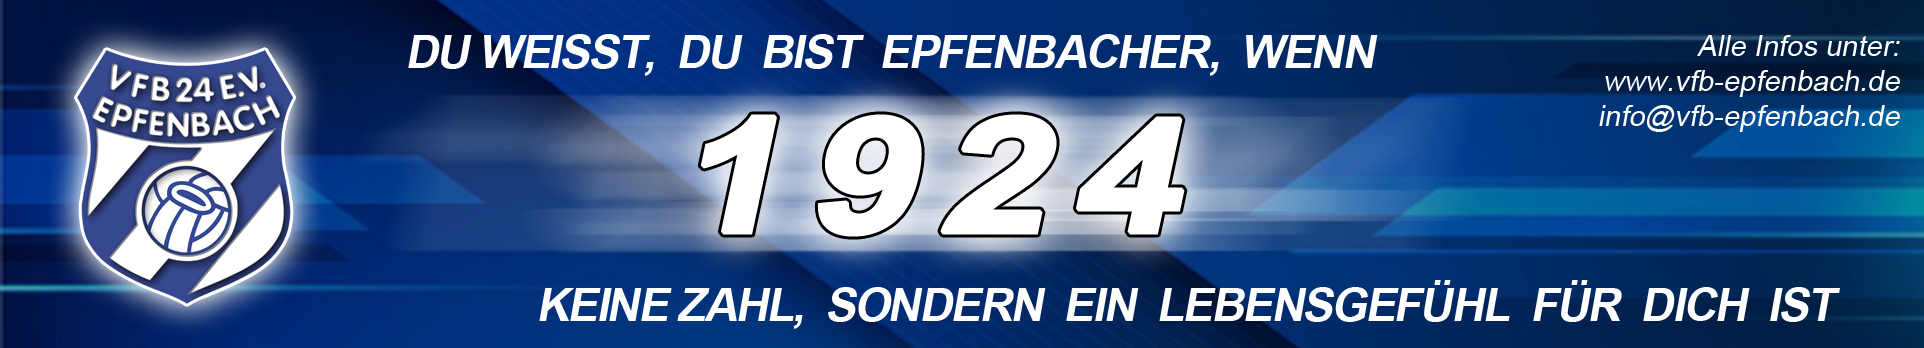 VfB 1924 Epfenbach Title Image